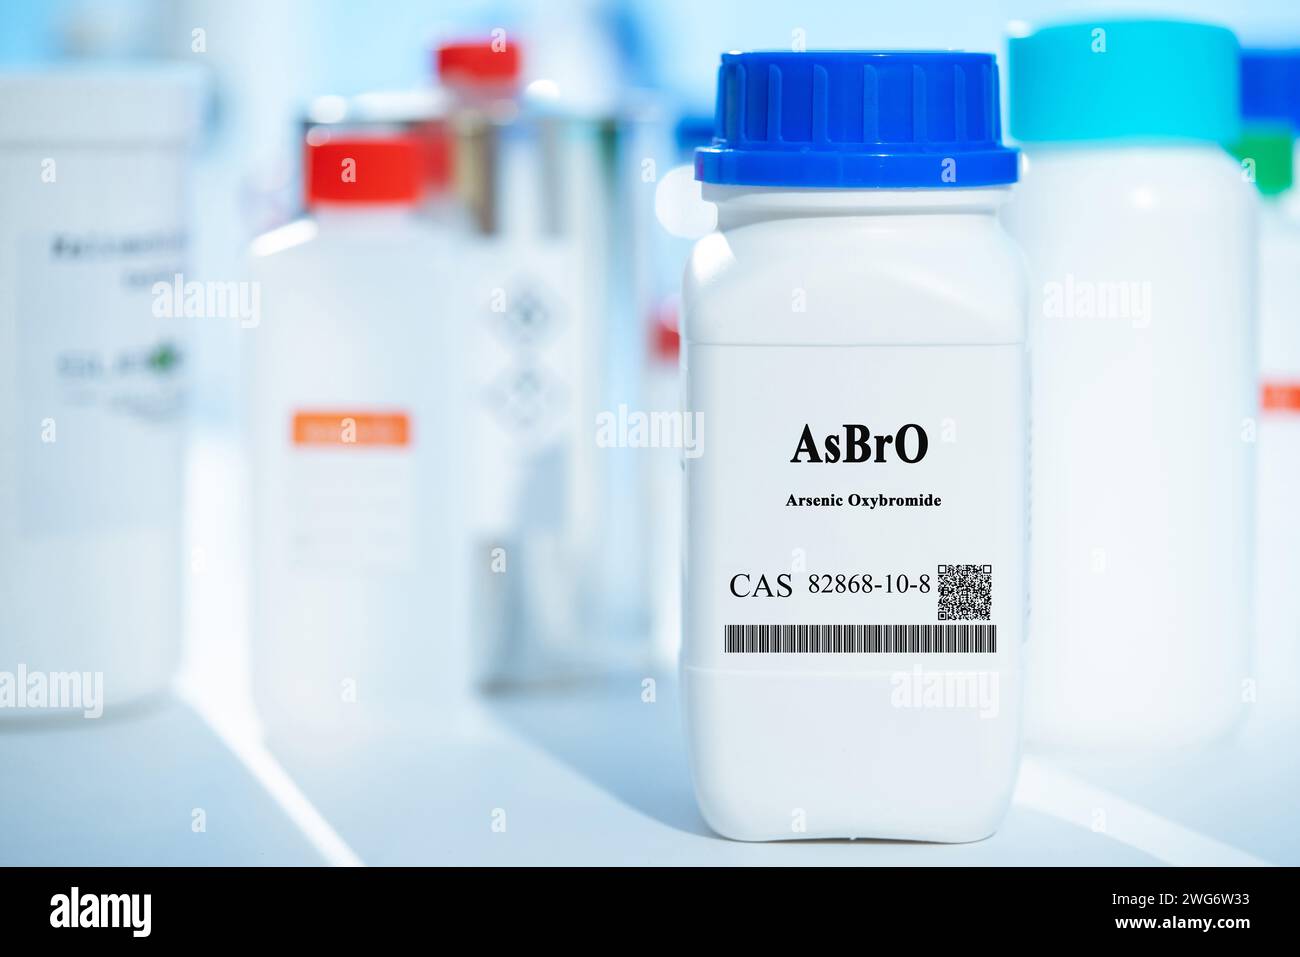 AsBrO arsénico oxibromuro CAS 82868-10-8 sustancia química en envases de laboratorio de plástico blanco Foto de stock